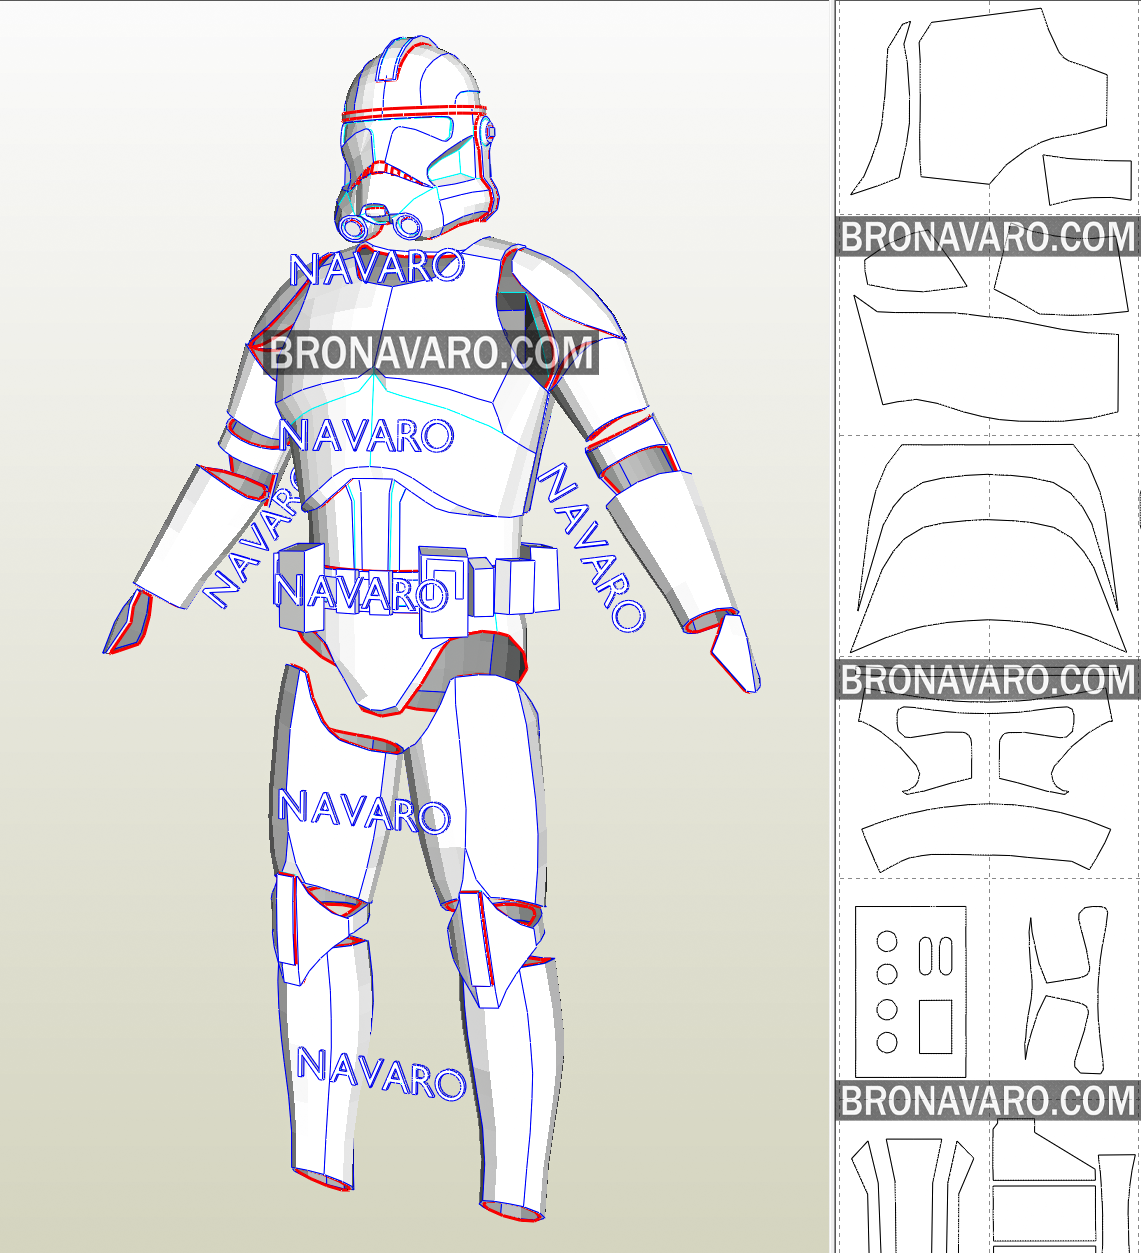 clone trooper armor pepakura files free